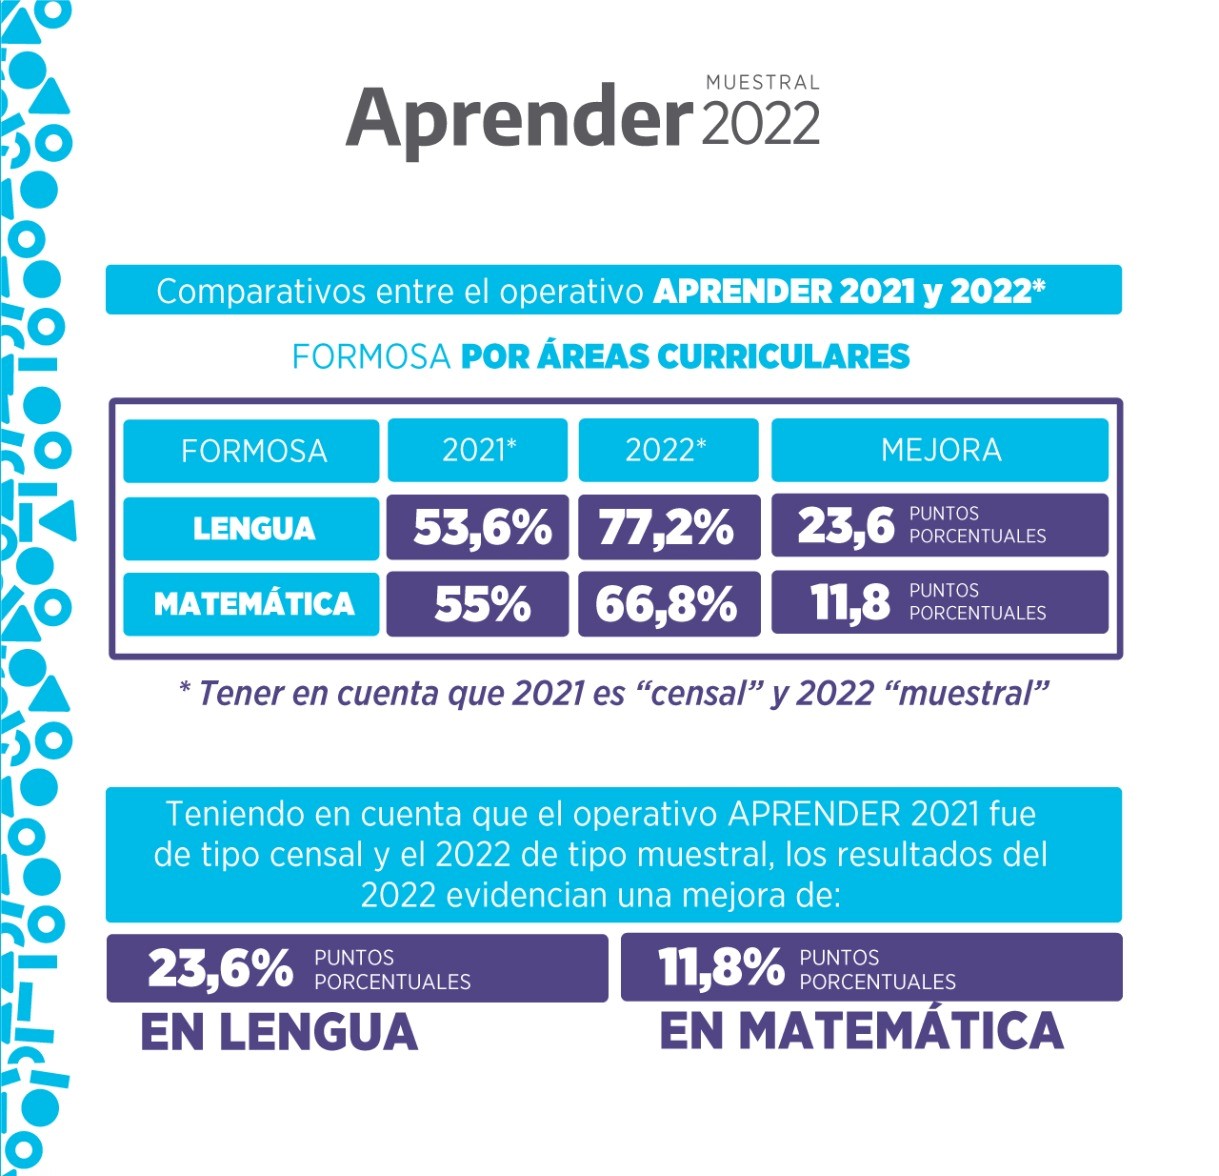 Aprender 2022: resultados de Formosa. Fuente: Agenfor